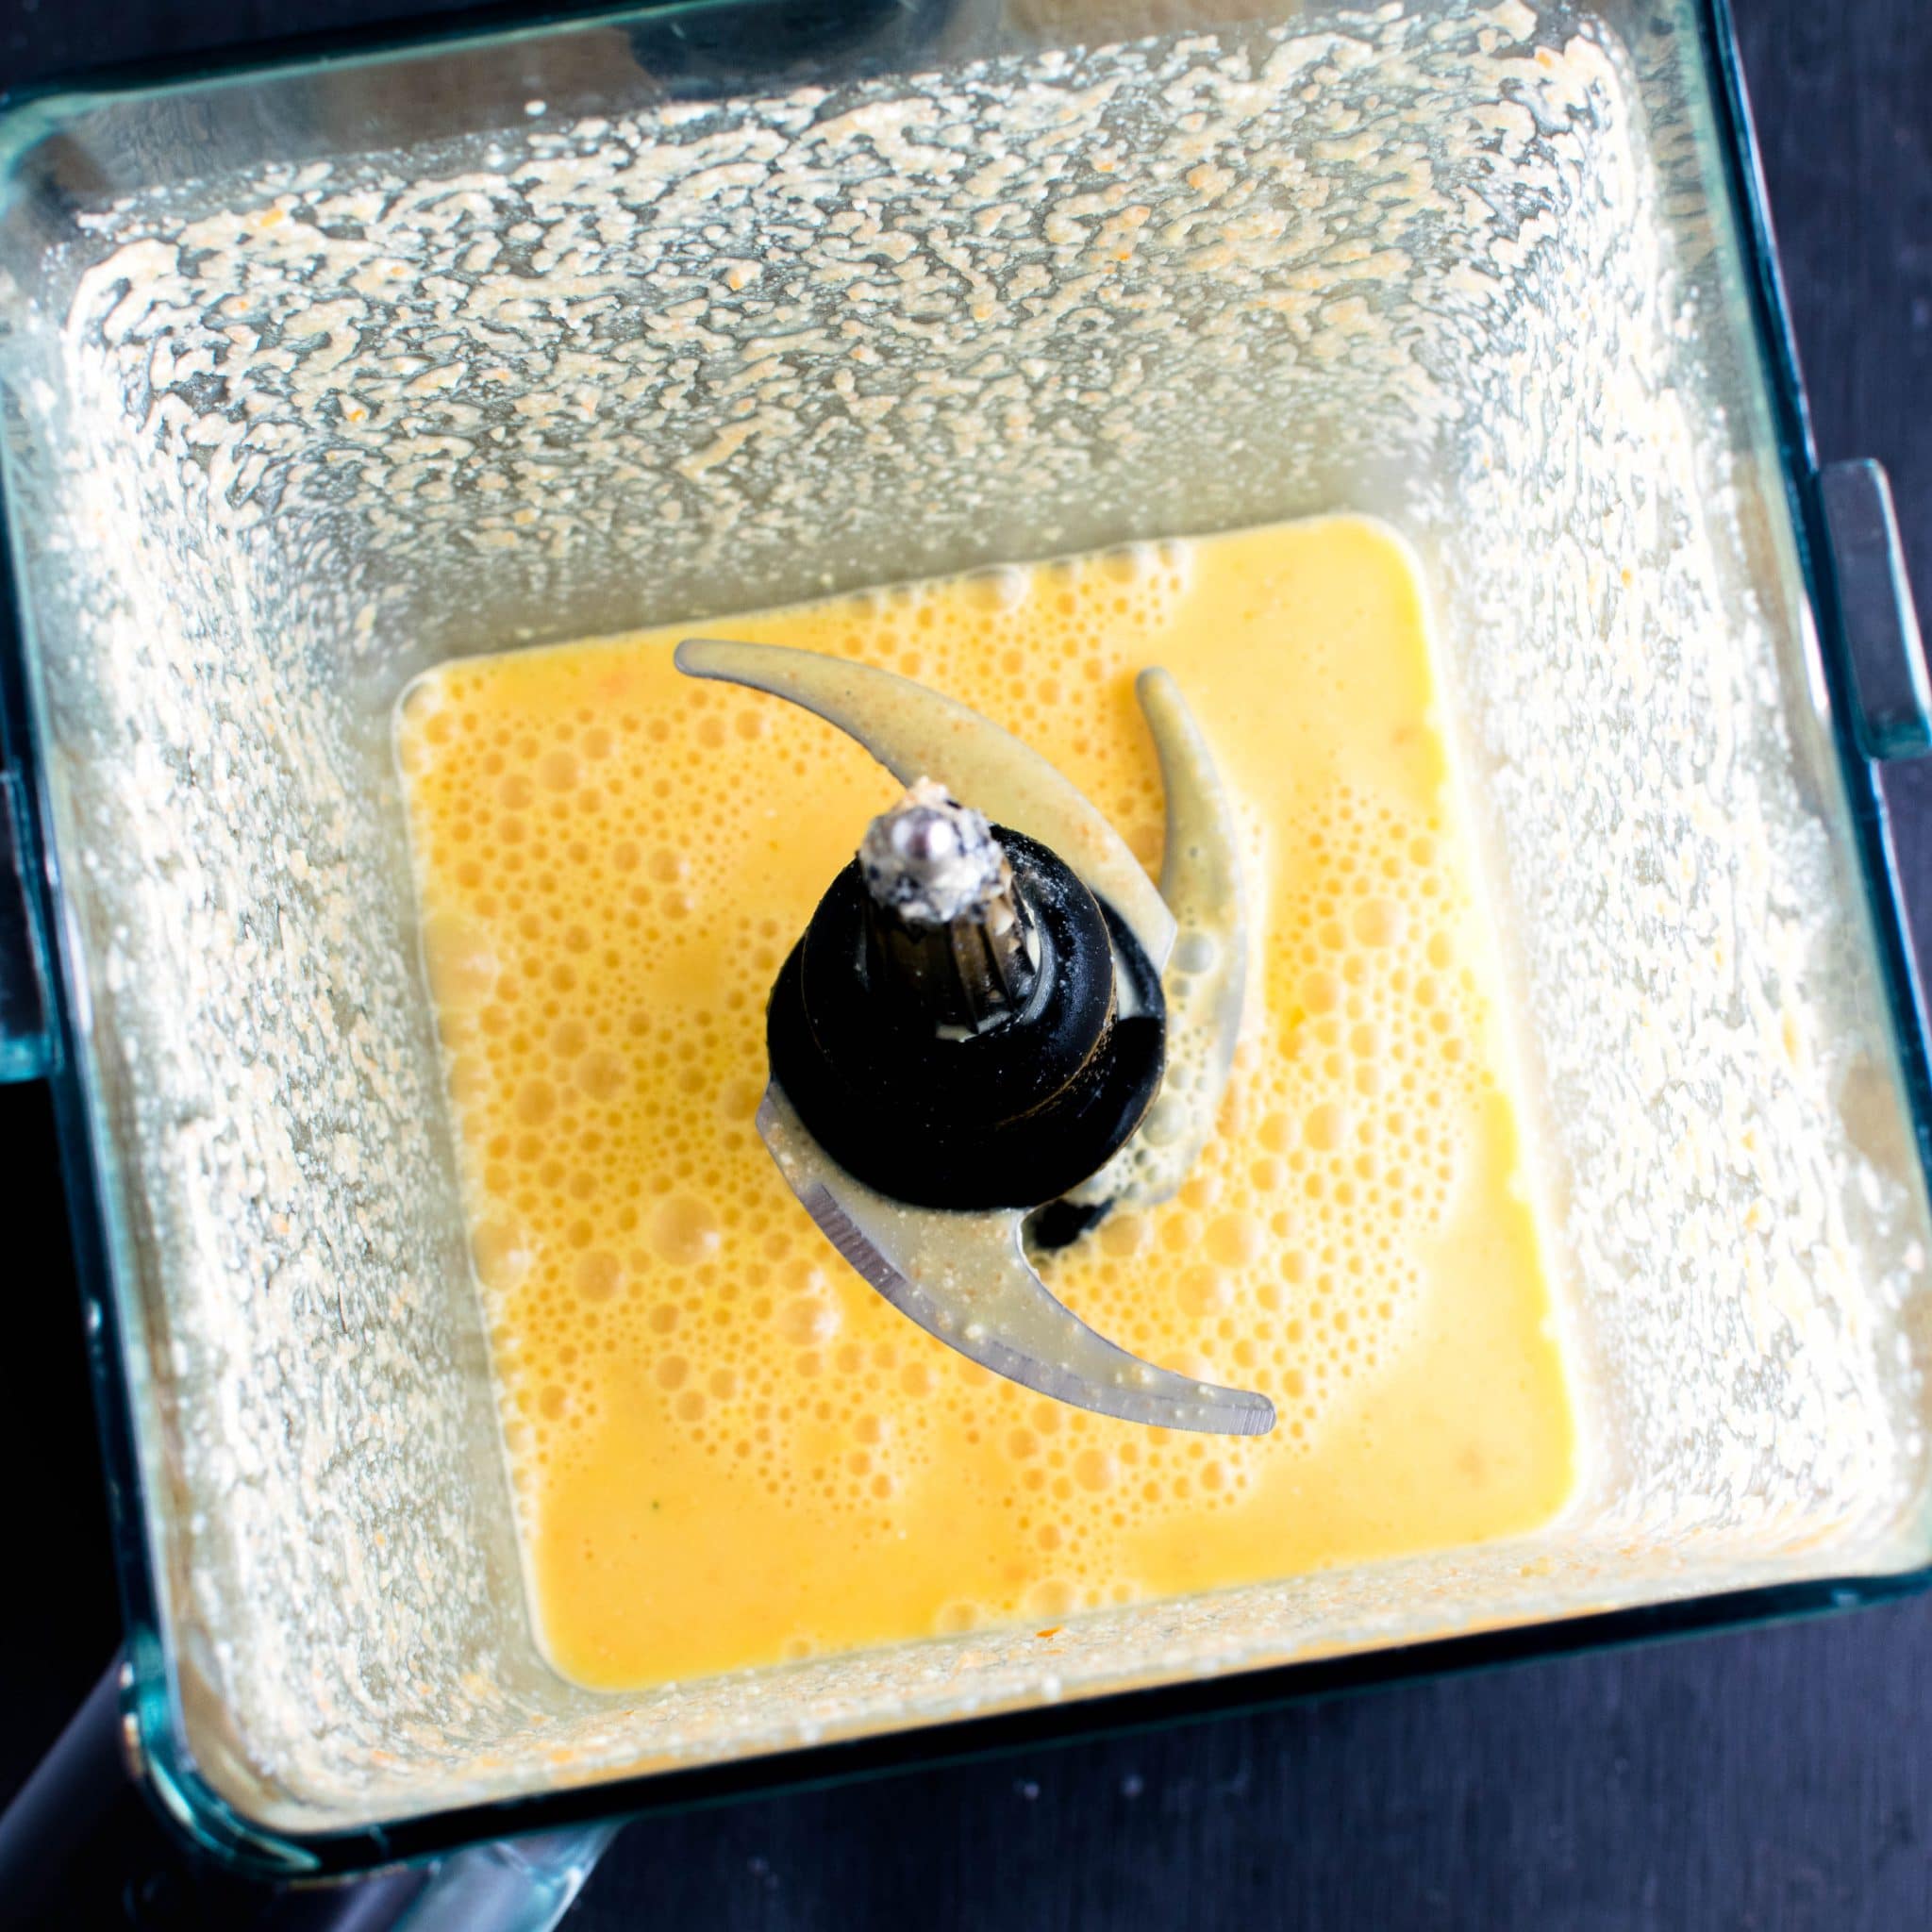 Habanero Sauce is shown in a blender | kiipfit.com